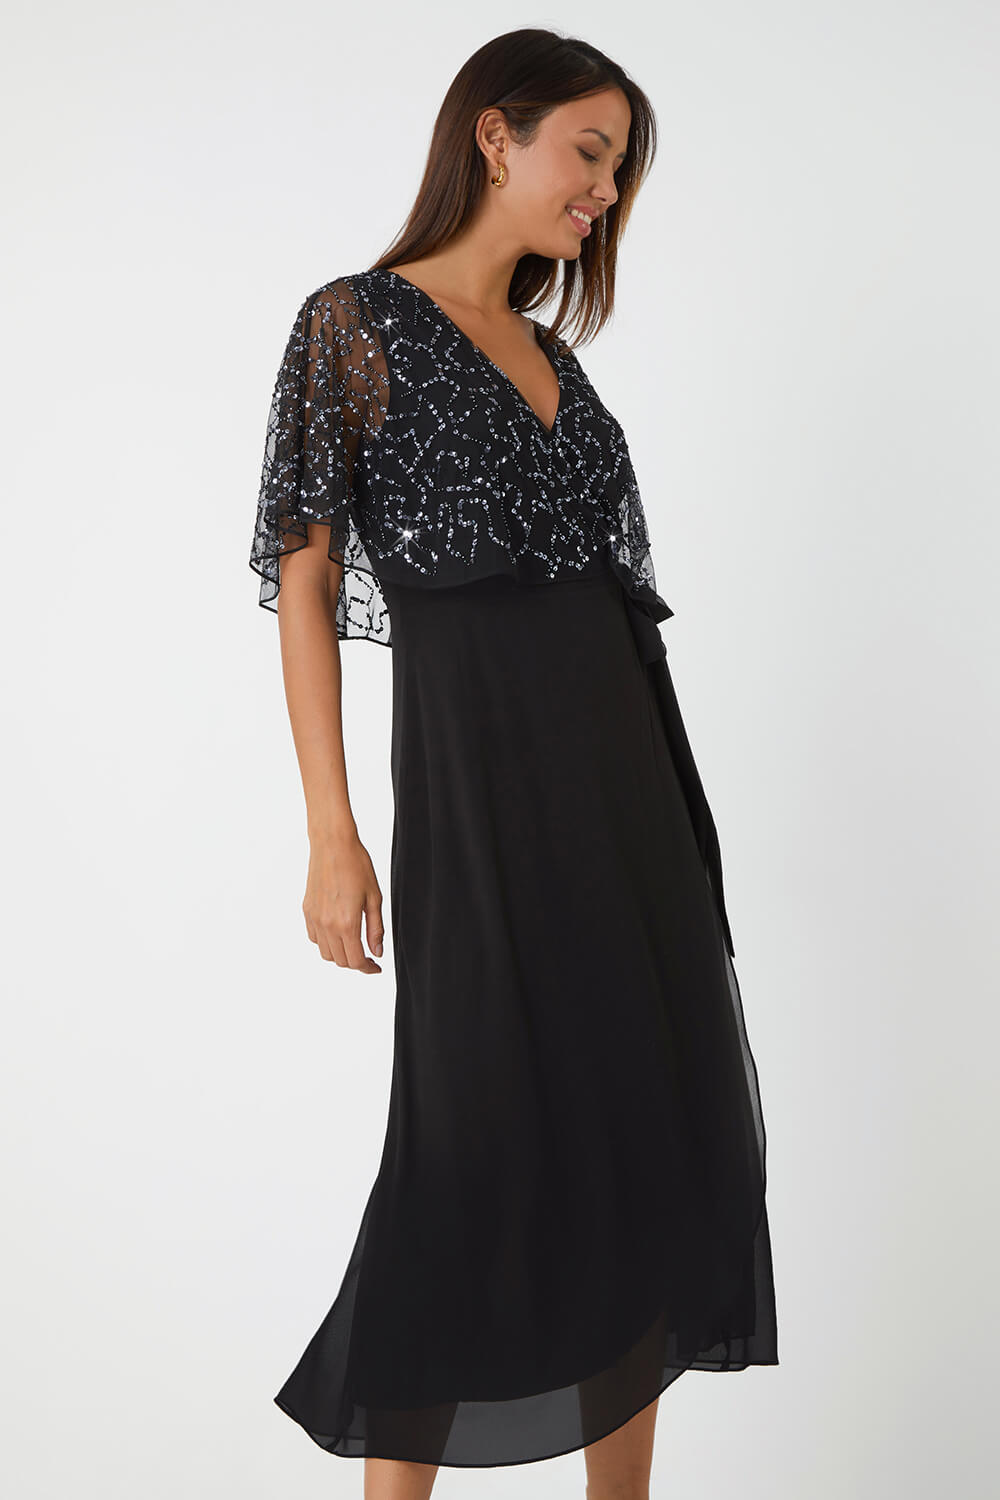 Black Sequin Embellished Chiffon Wrap Maxi Dress, Image 4 of 5